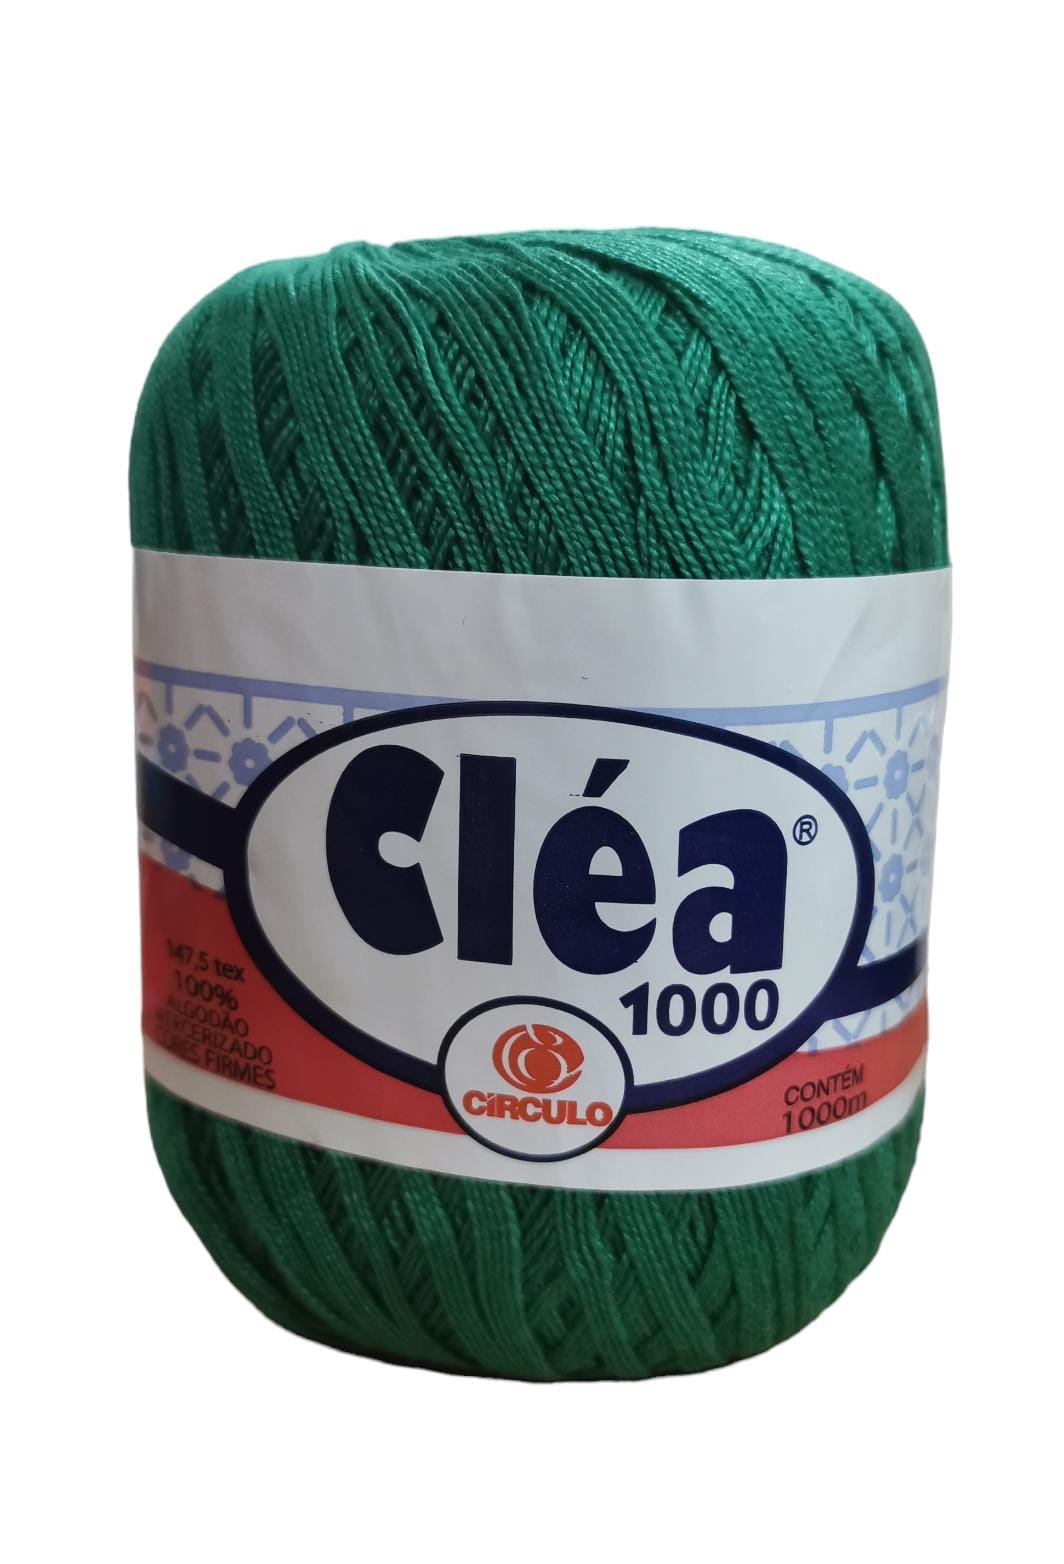 Hilo Clea 1000 Circulo 151g Color Verde 5363